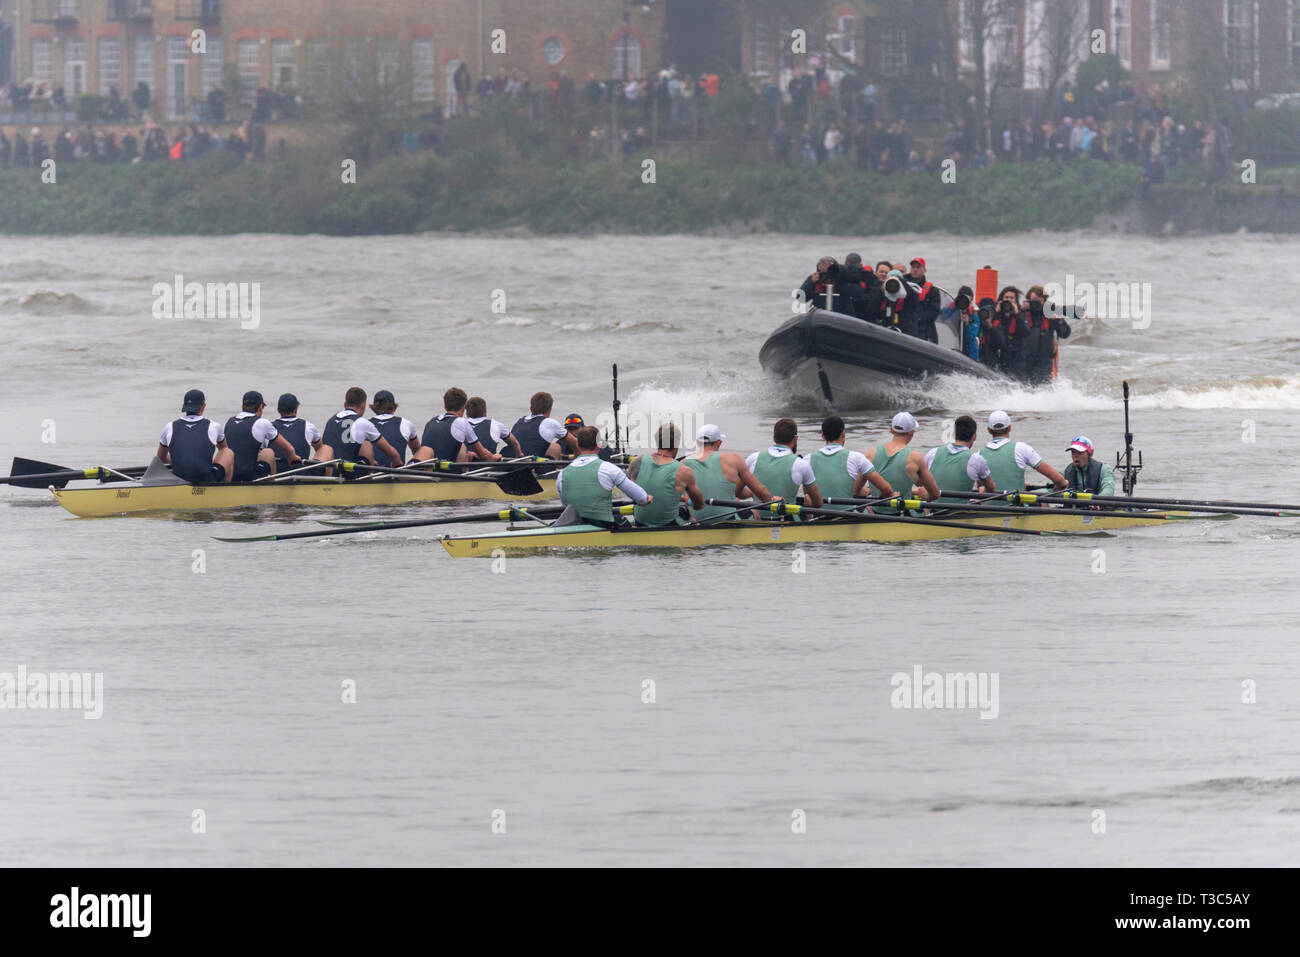 Oxford v Cambridge al 2019 University Boat Race racing verso la linea di finitura Mortlake, Londra, Regno Unito. Il boat race team di canottaggio sul fiume Tamigi Foto Stock